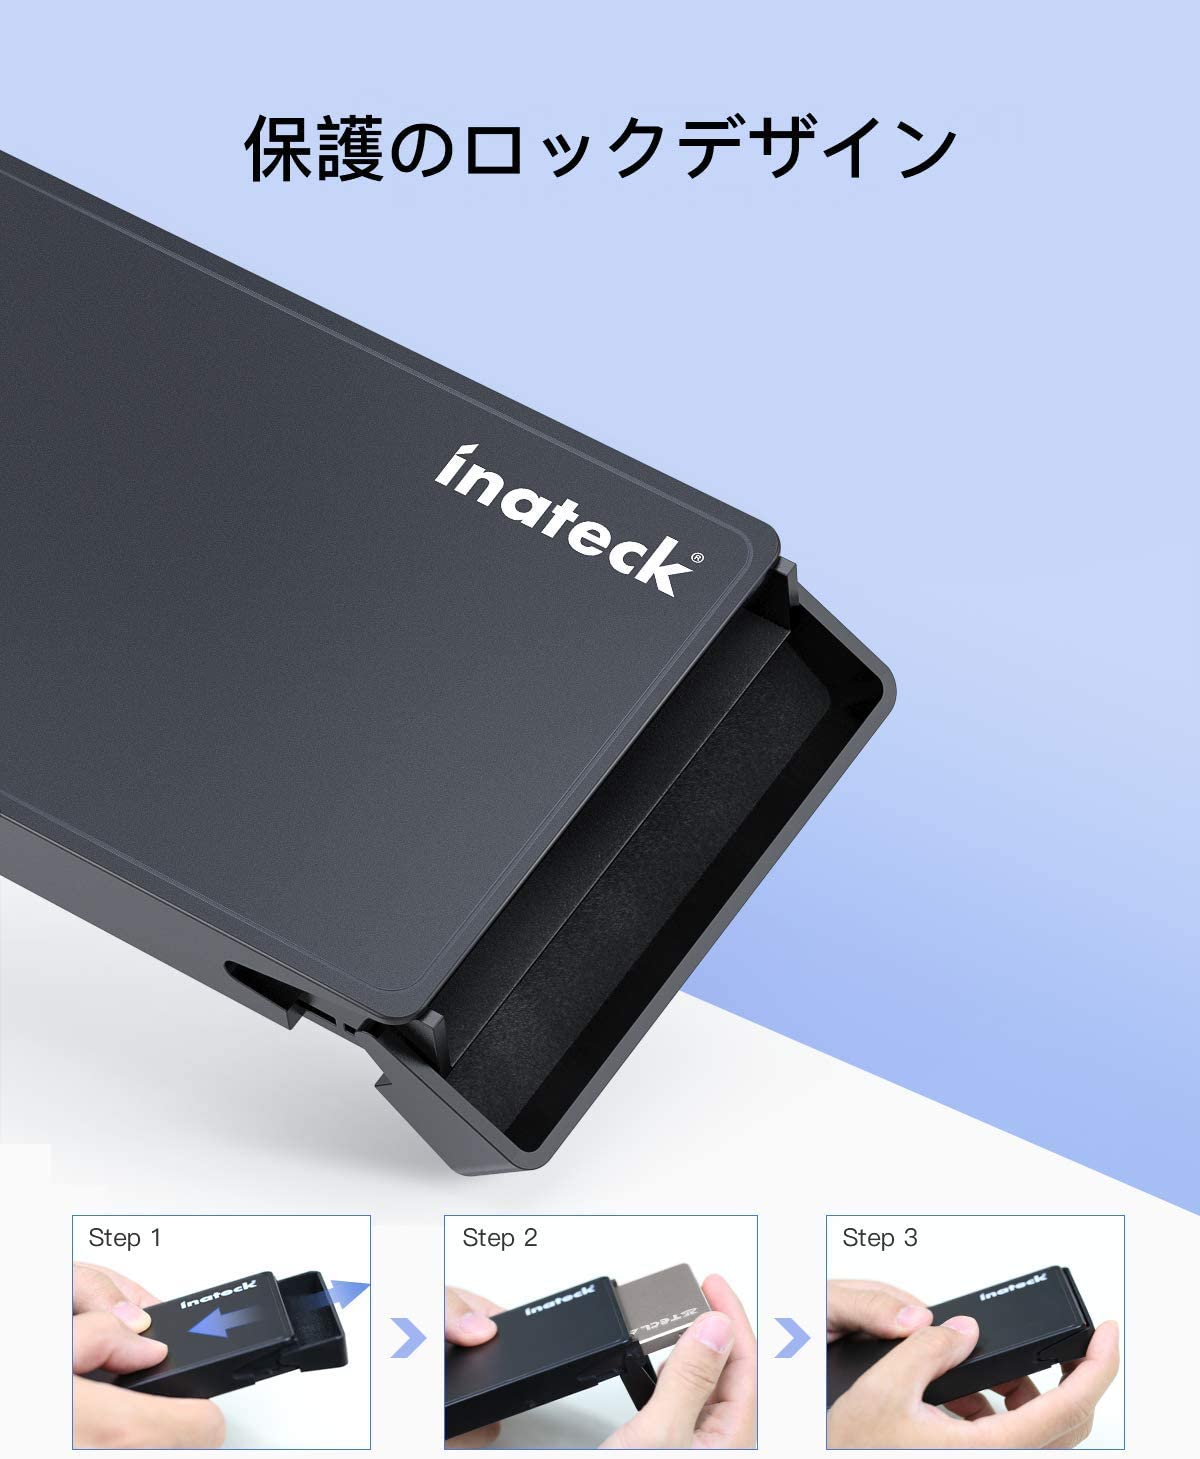 Inateck 2.5インチ HDD ケース、USB-C & USB-A 3.1(Gen1)ケーブル付き、UASPサポート、FE2005AC black - Inateckバックパックジャパン